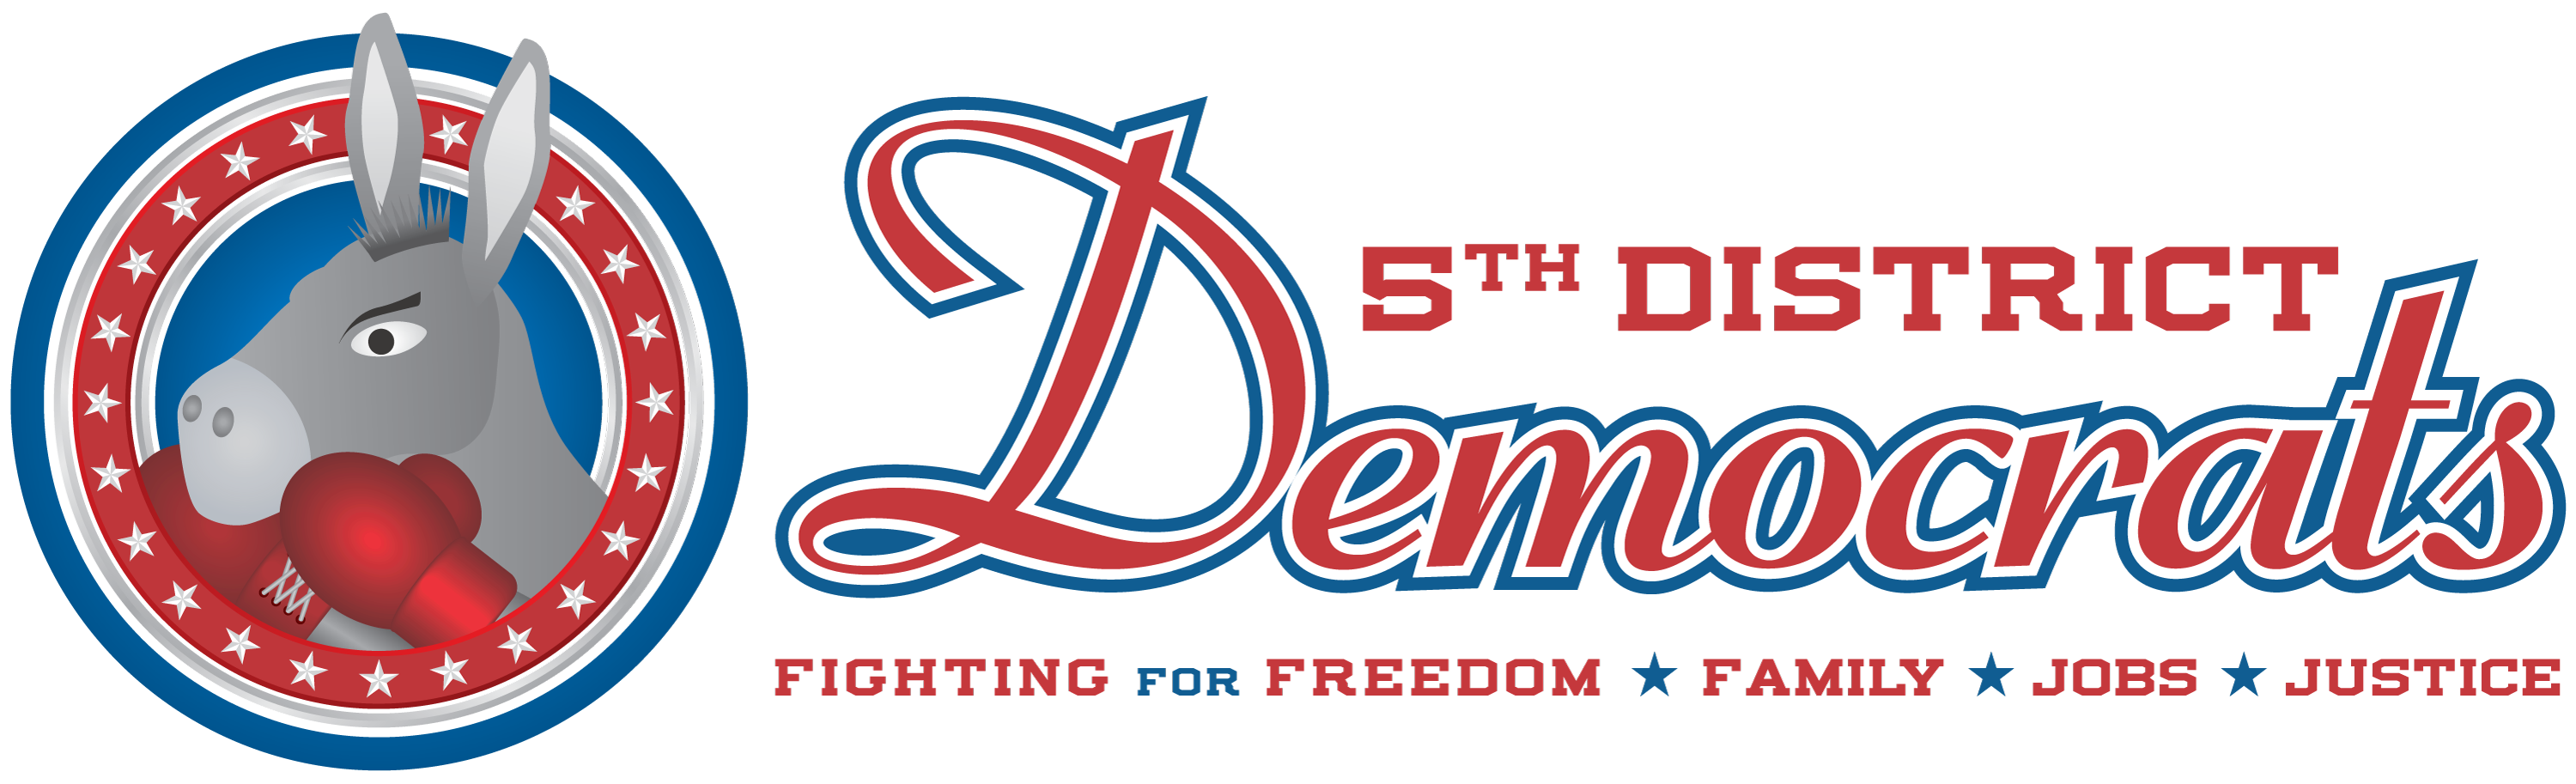 5th Legislative District Democrats